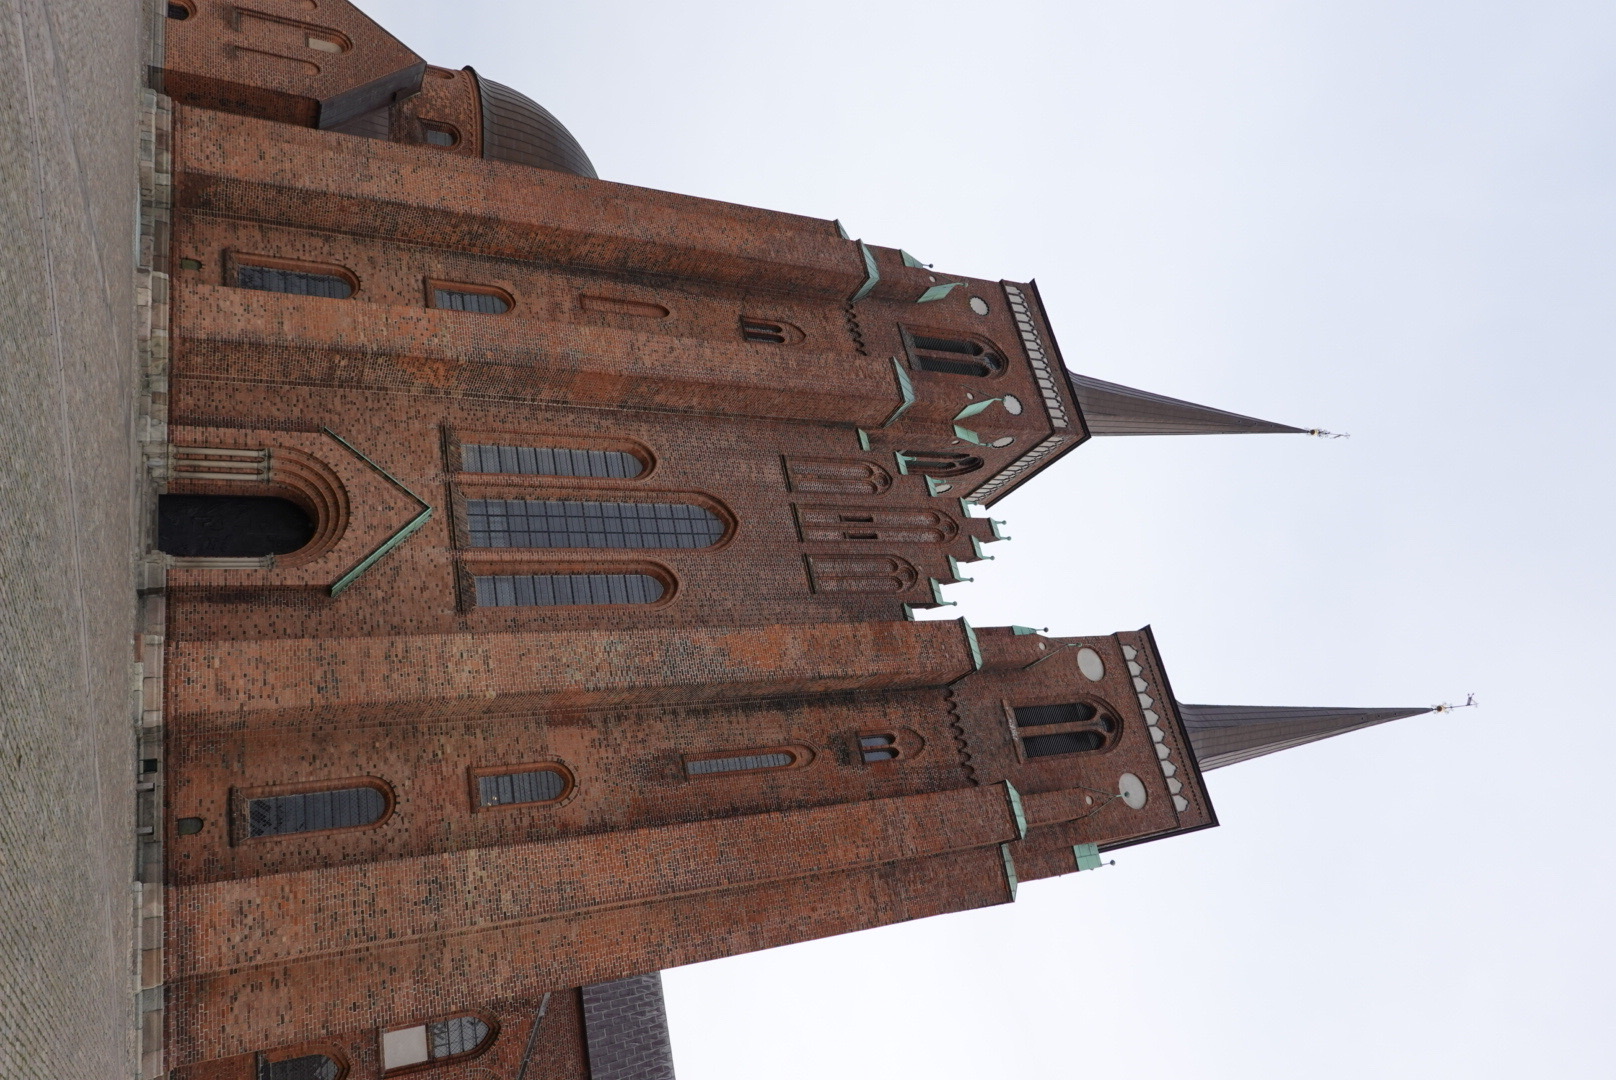 罗斯基勒大教堂是丹麦最杰出的建筑精品之一，1995年被列入世界遗产名录。教堂始建于1170年，是斯堪